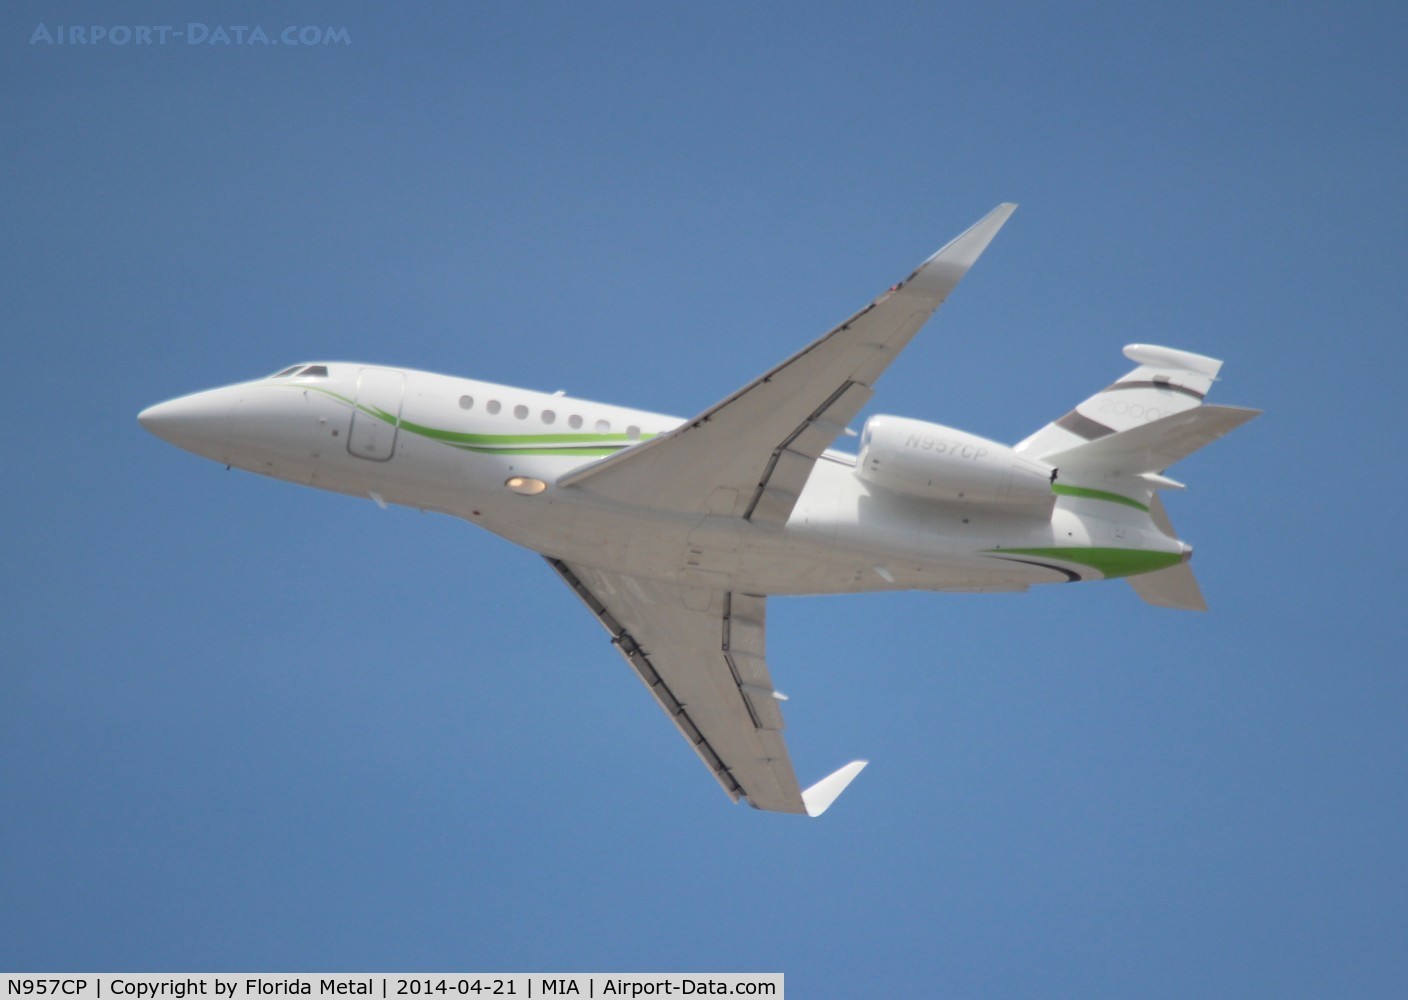 N957CP, 2013 Dassault Falcon 2000S C/N 703, Falcon 2000S